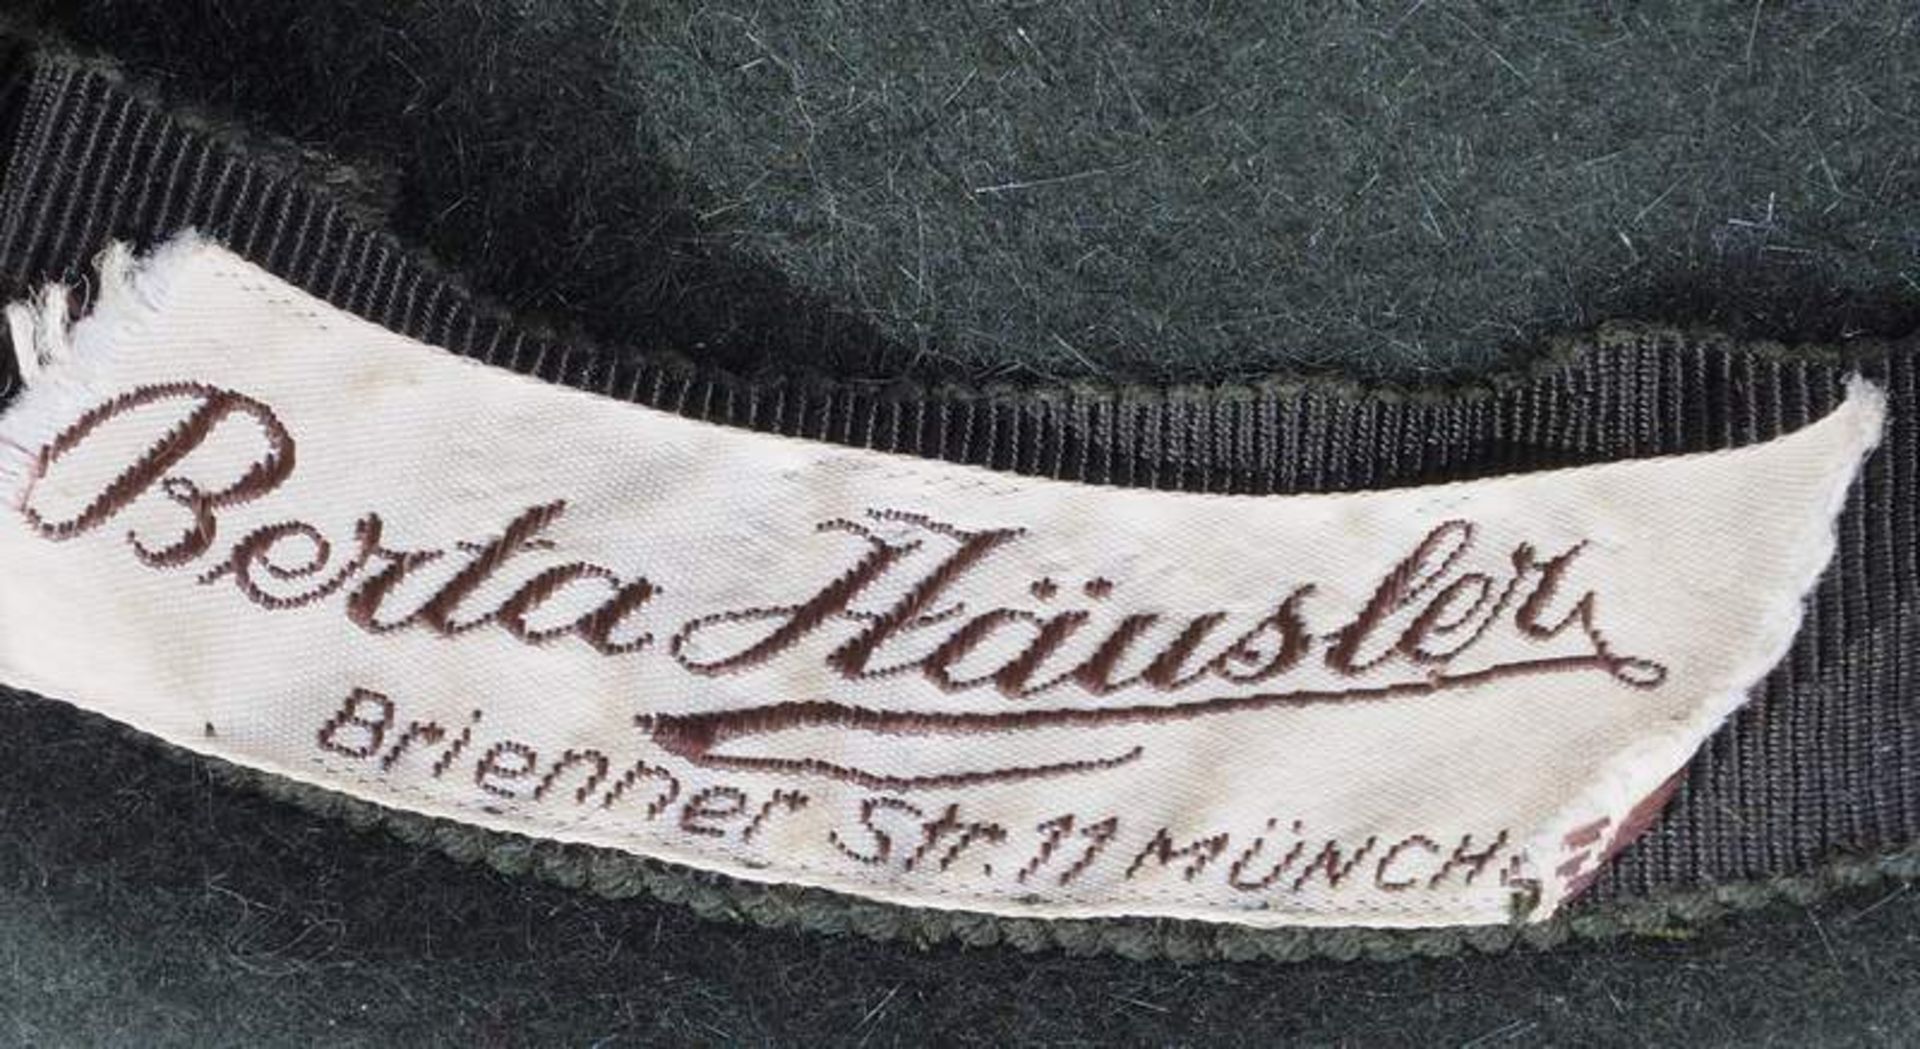 Damen-Trachenhut mit Gamsbart und zahlreichen Dekorationen. Innen Huthersteller Berta Häusler, - Image 6 of 6